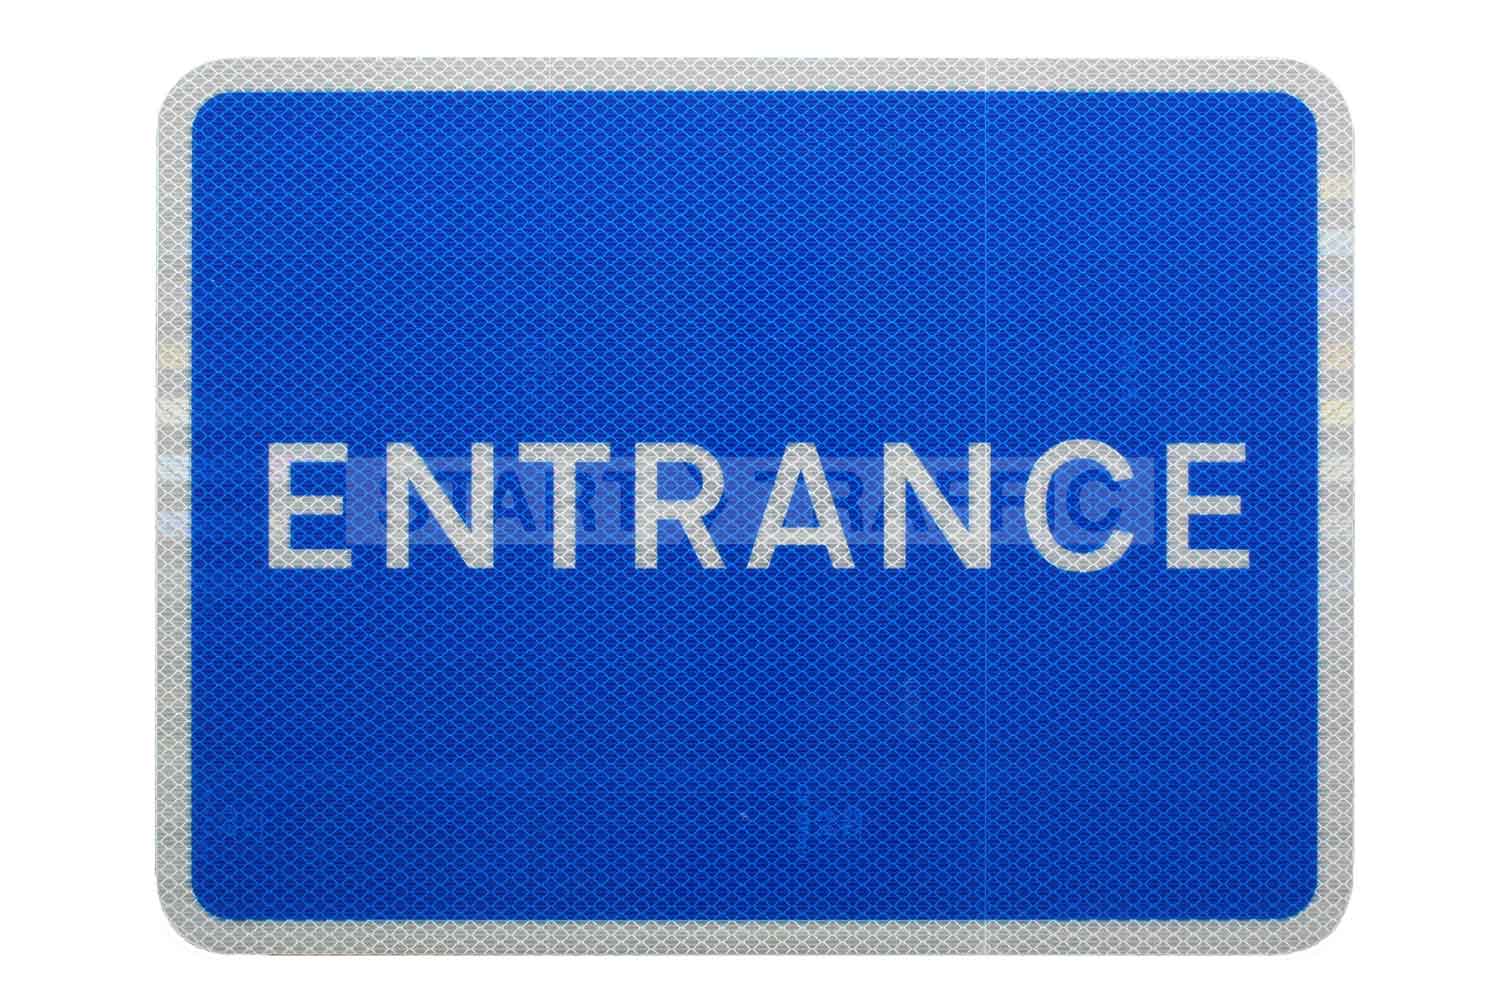 Entrance Sign Landscape